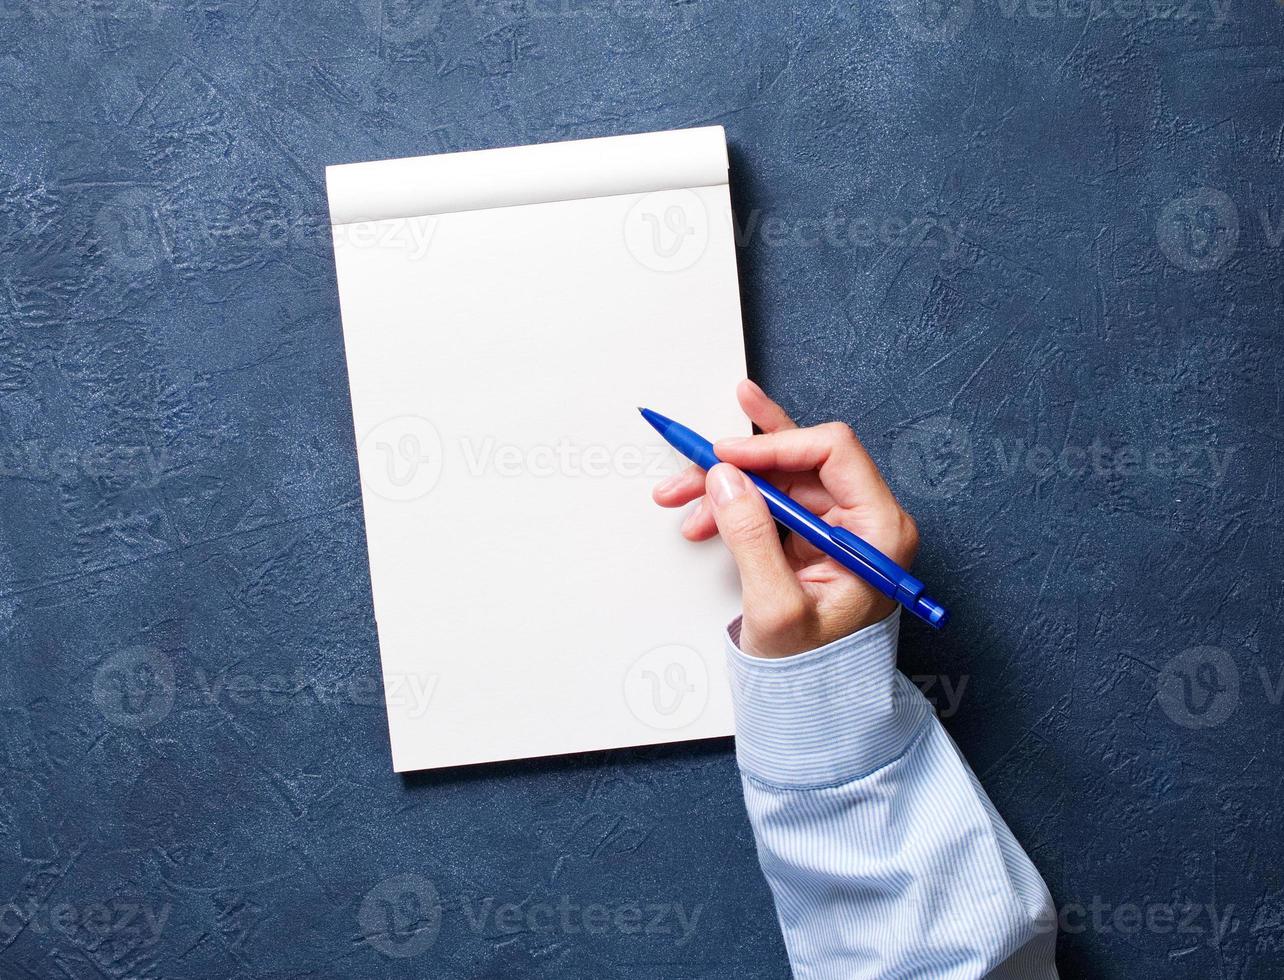 femme écrit dans un cahier sur une table bleu foncé, main dans une chemise tenant un crayon, dessin de carnet de croquis photo